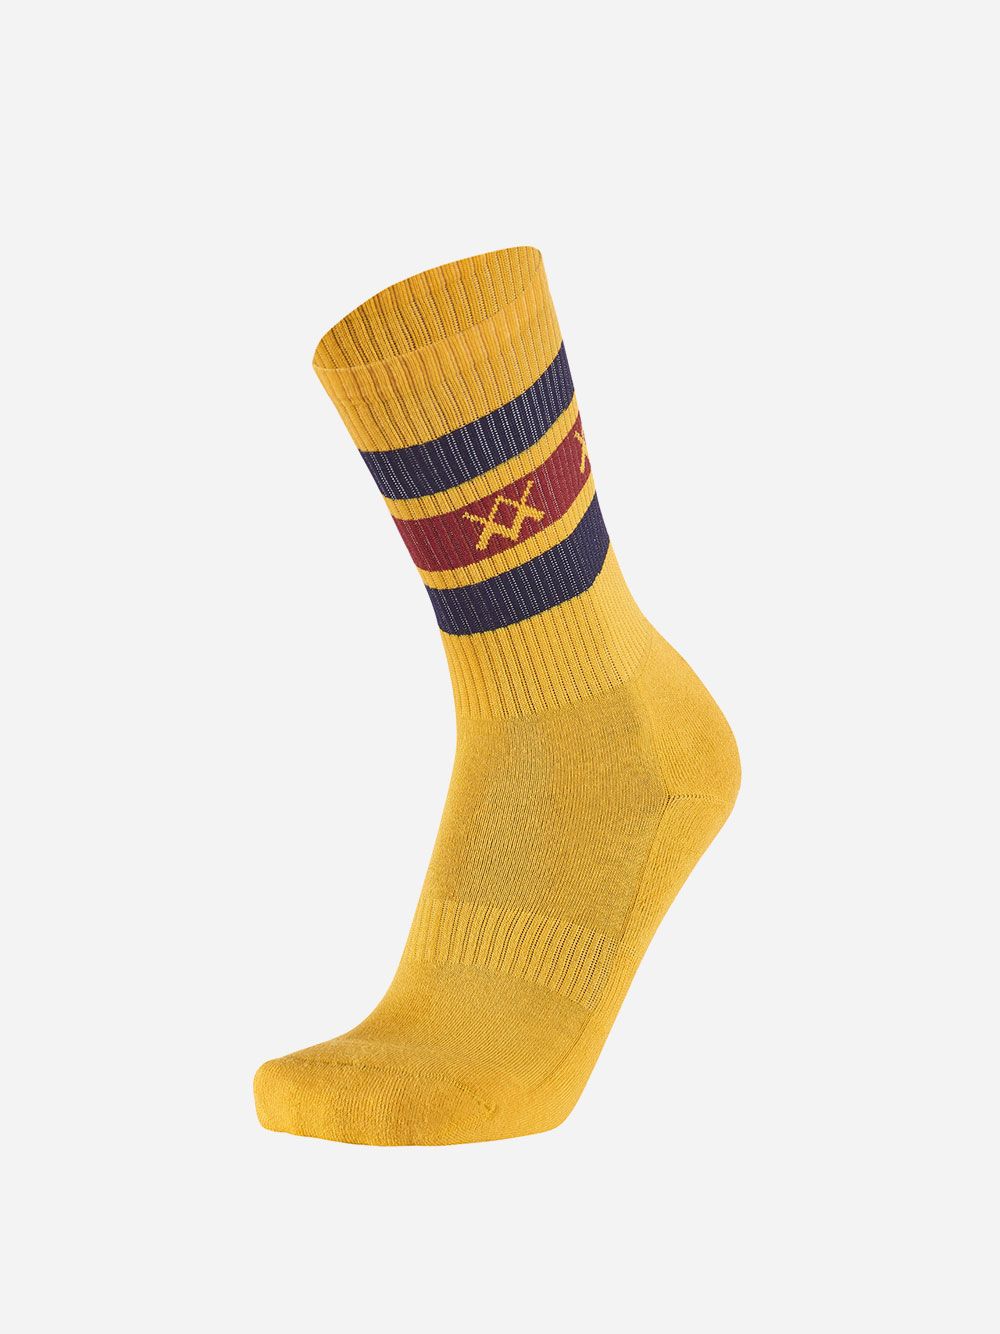 Yellow Socks Stripes WM | Westmister